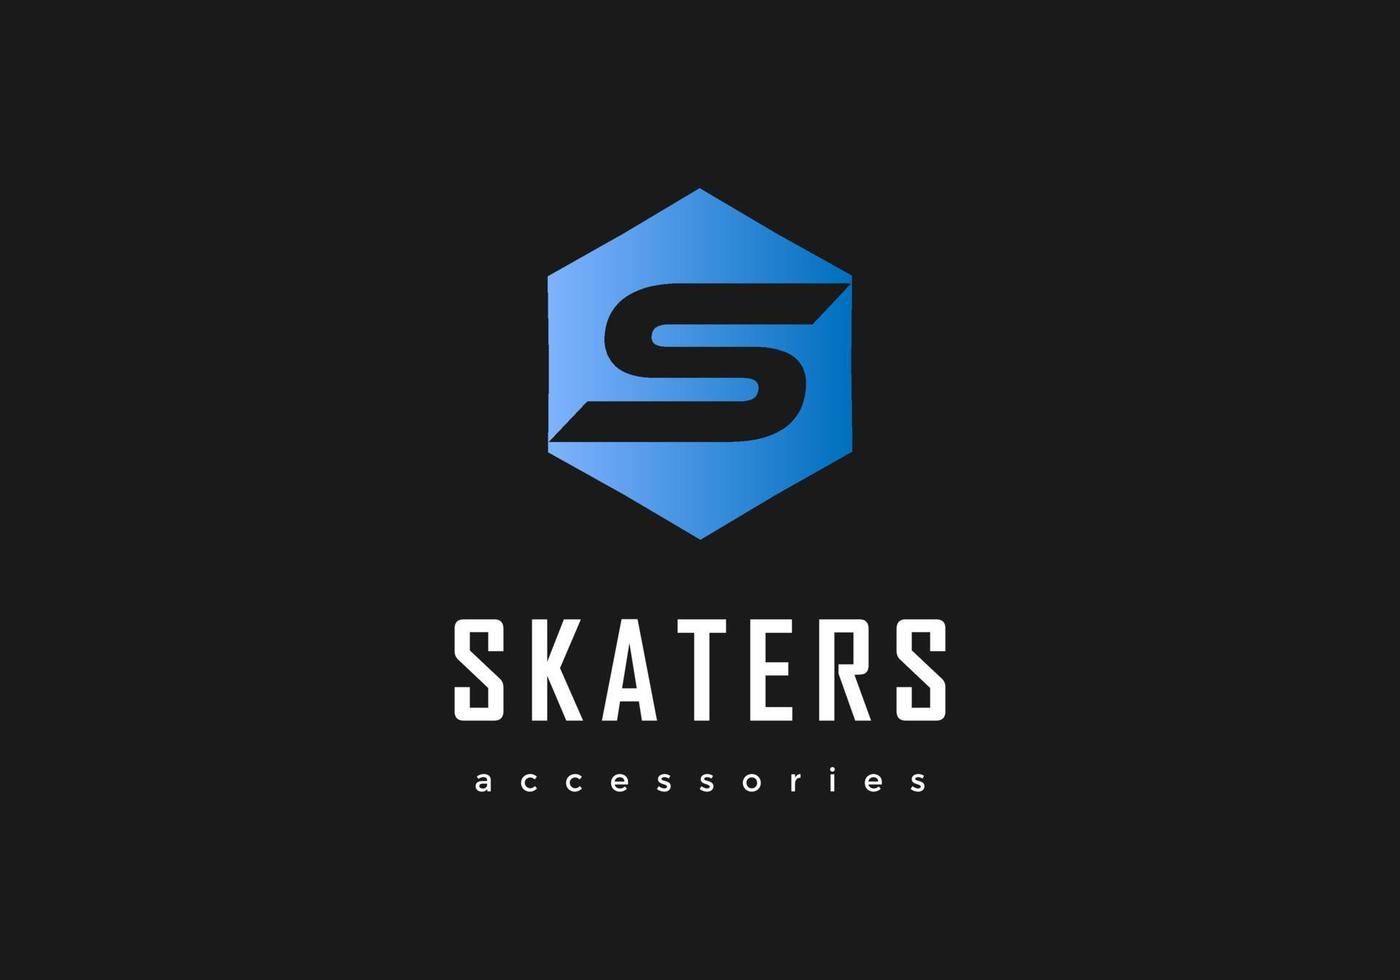 buchstabe s logo, perfekt für skateshops. vektor